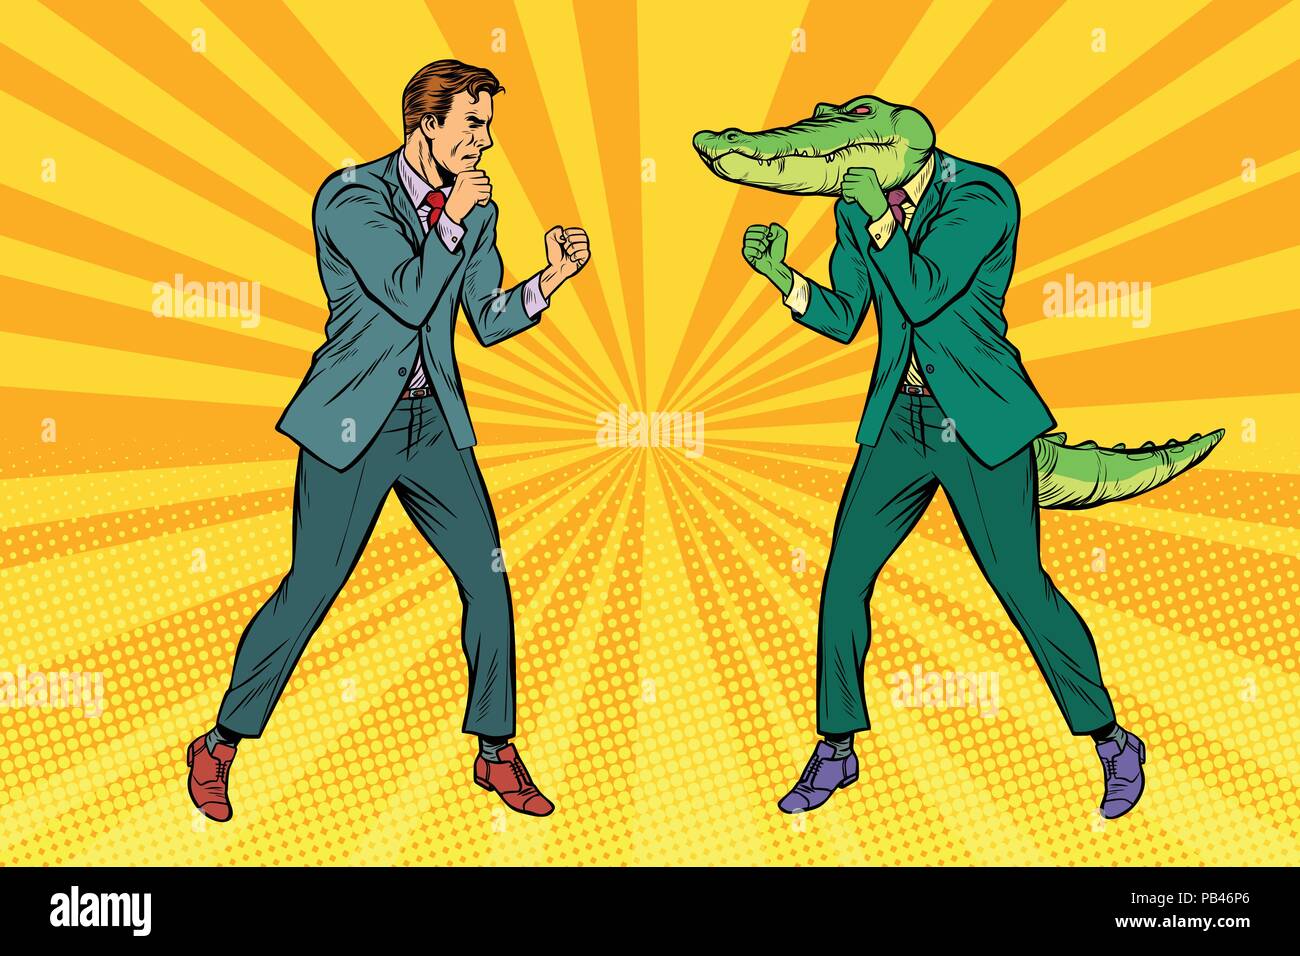 Combats de boxe homme reptiloid avec pinces crocodiles Illustration de Vecteur